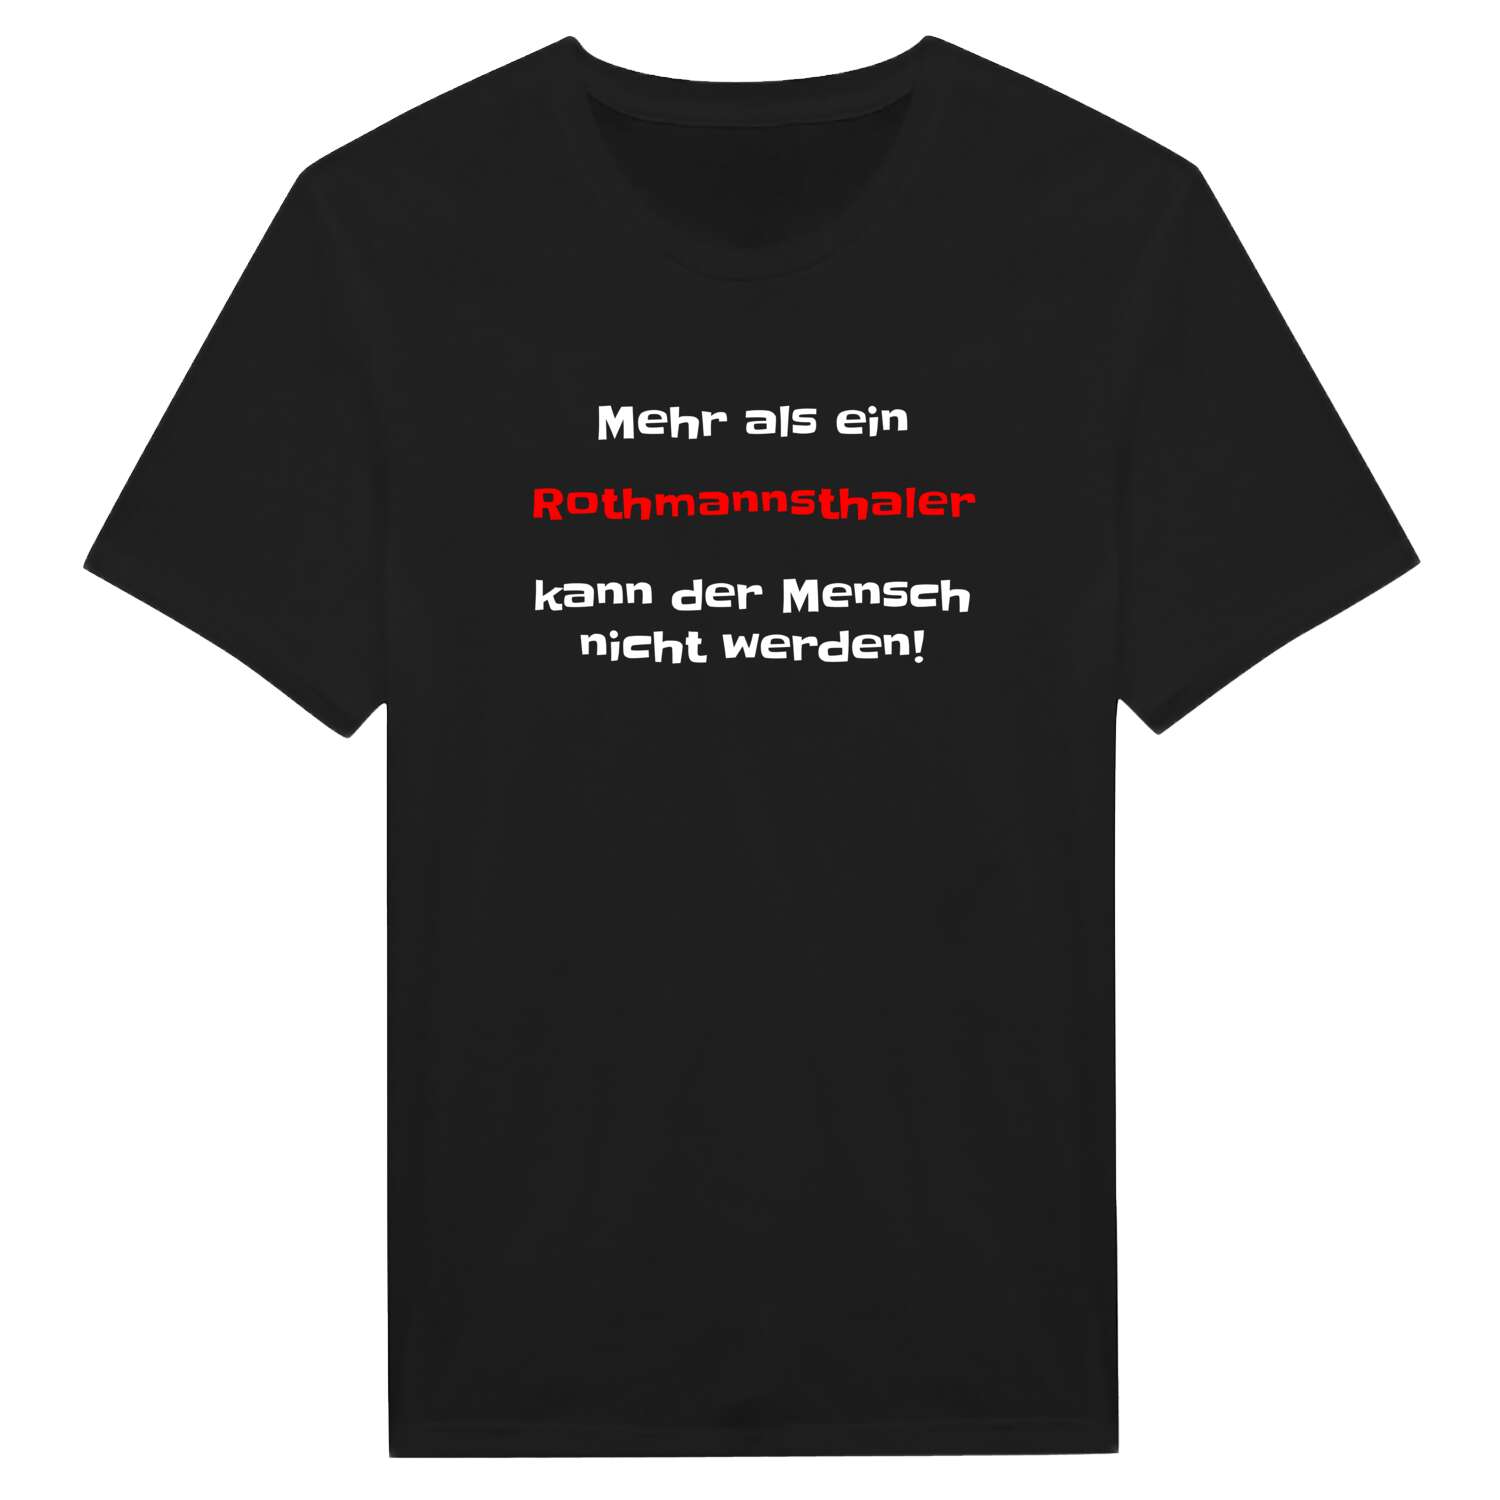 Rothmannsthal T-Shirt »Mehr als ein«